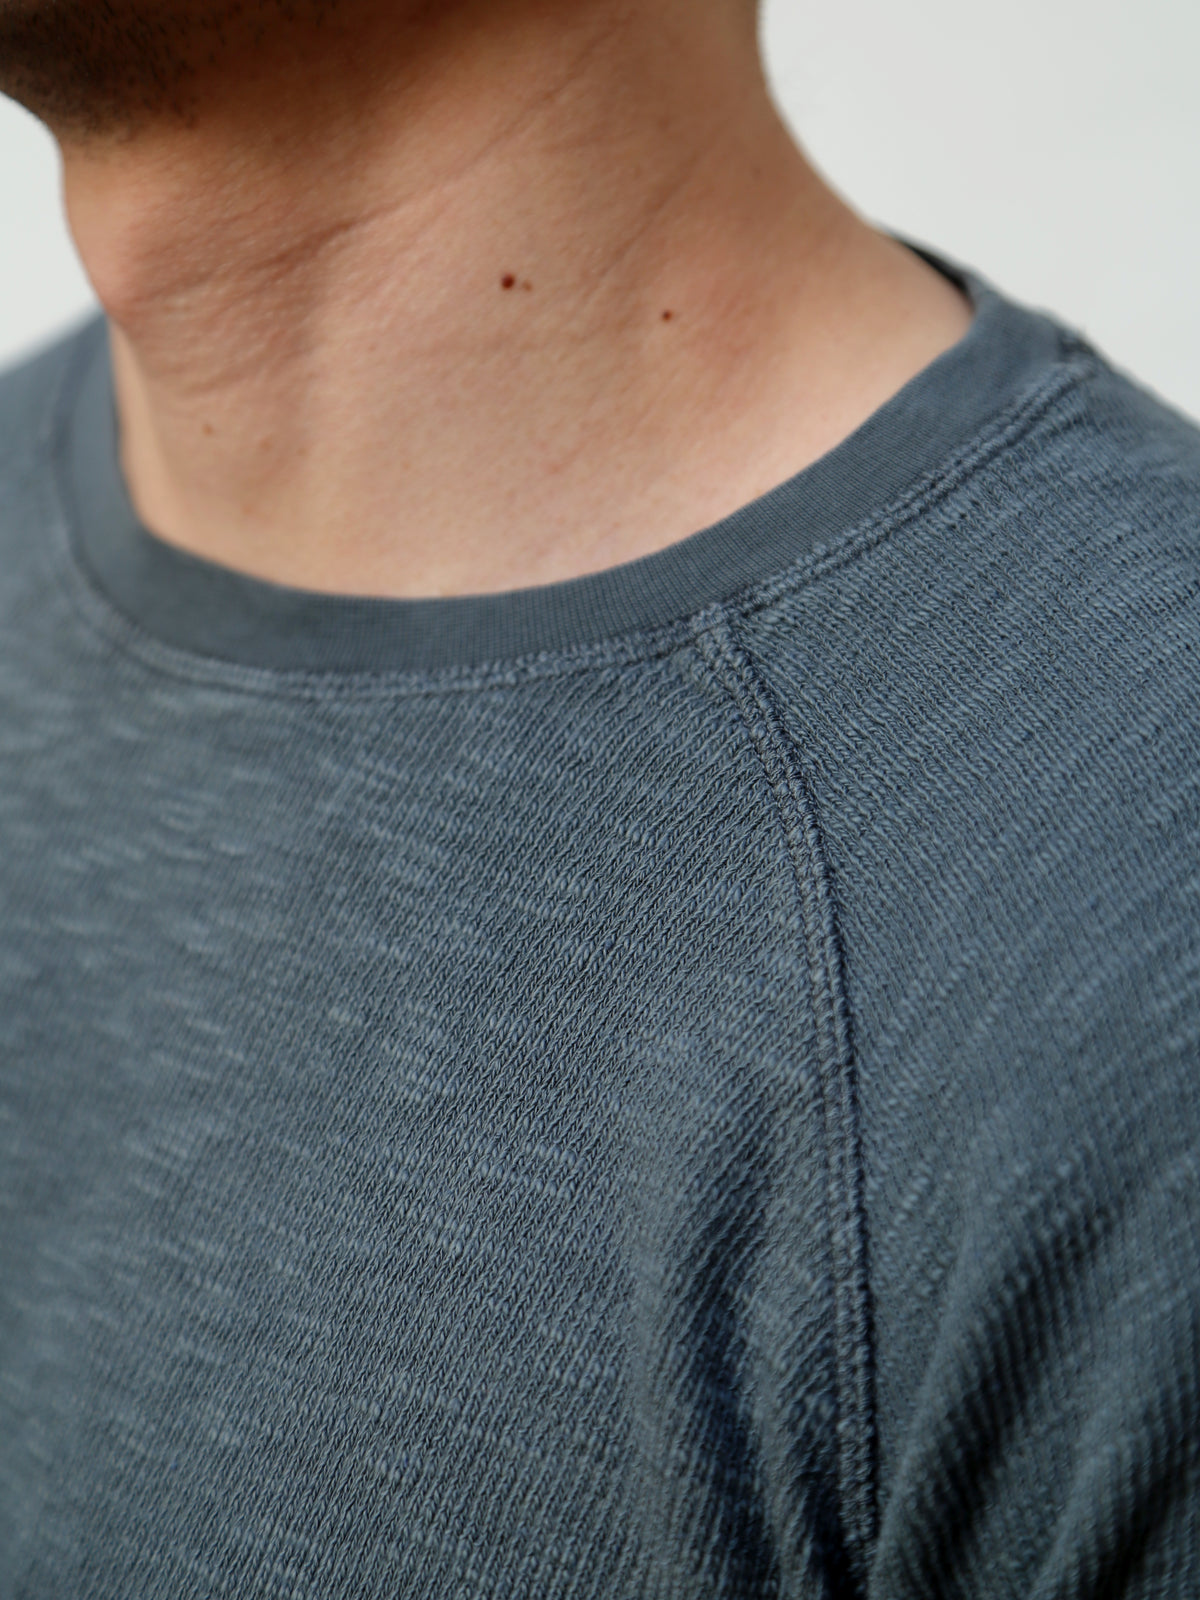 Hansen Garments Felix Raglan Long Sleeve T-shirt – Oxidized (27-112-6)